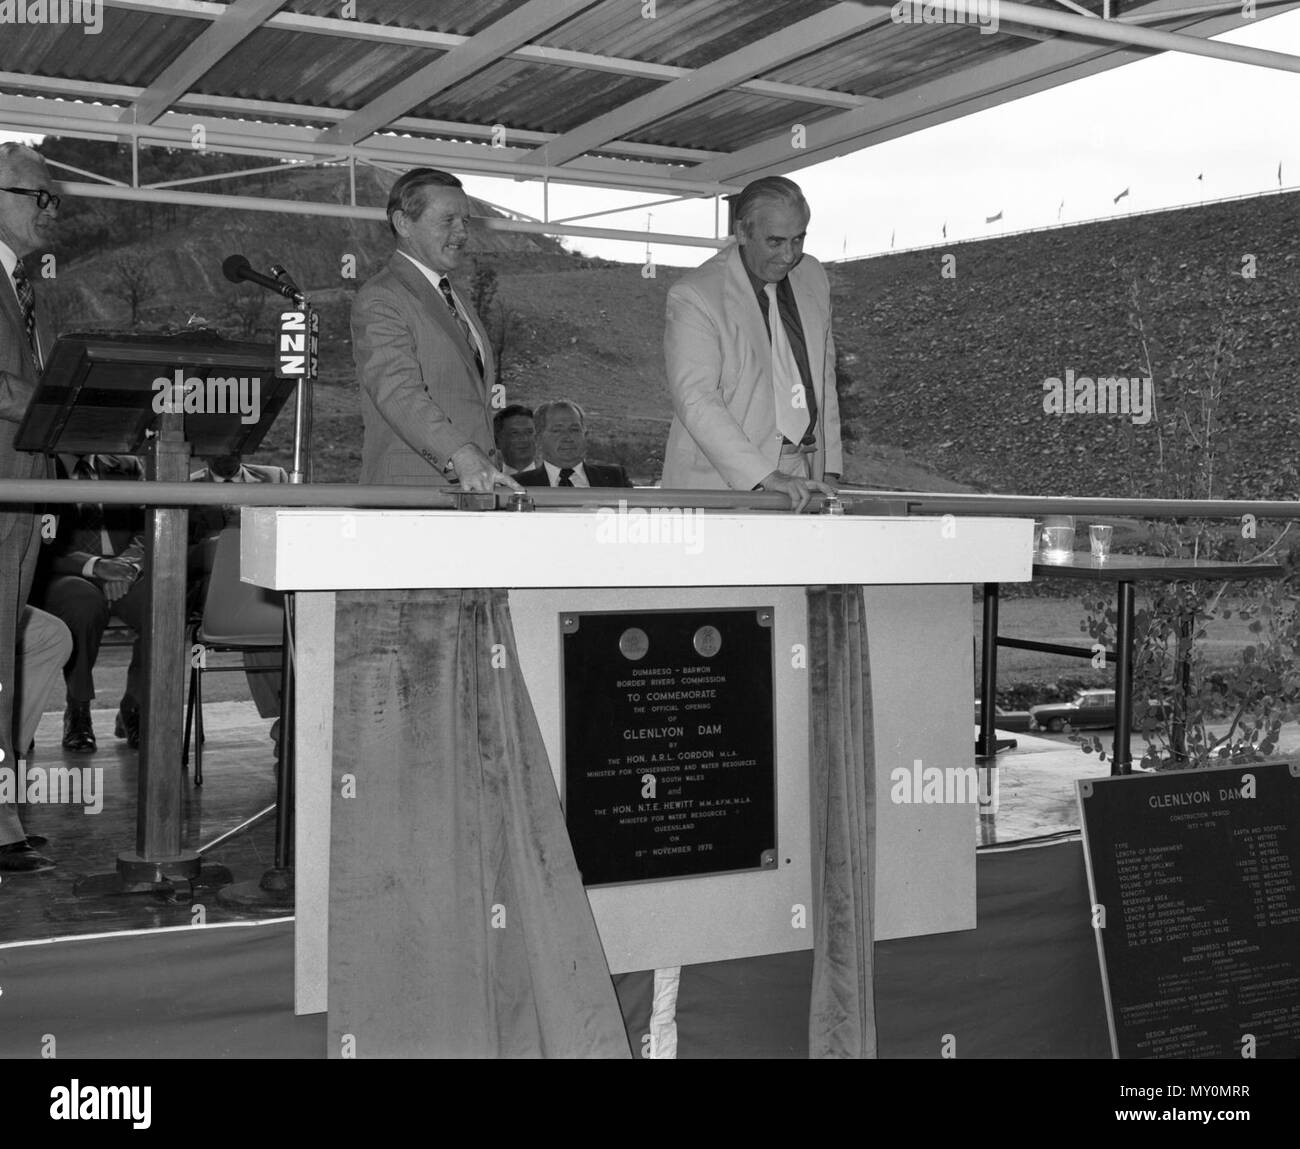 Eröffnung der Glenlyon Dam, 19. November 1976. Nev Hewitt, Queensland Minister für Wasserressourcen und Lin Gordon, New South Wales Minister für den Umweltschutz und die Wasserressourcen. Stockfoto